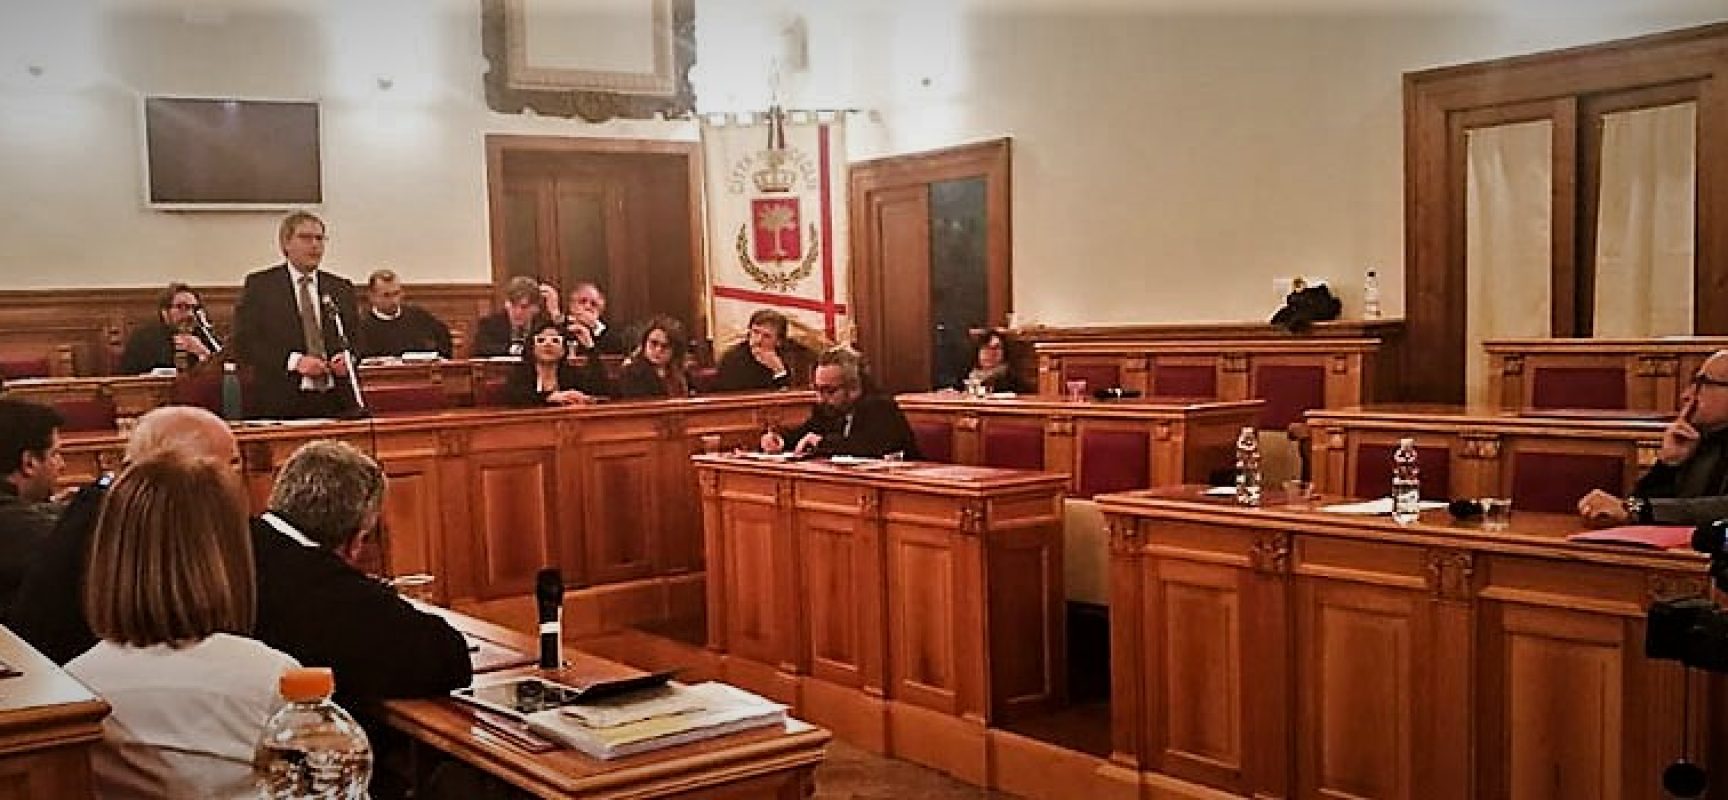 Consiglio comunale: discussi emendamenti aggiornamento Dup, cittadinanza onoraria a Liliana Segre